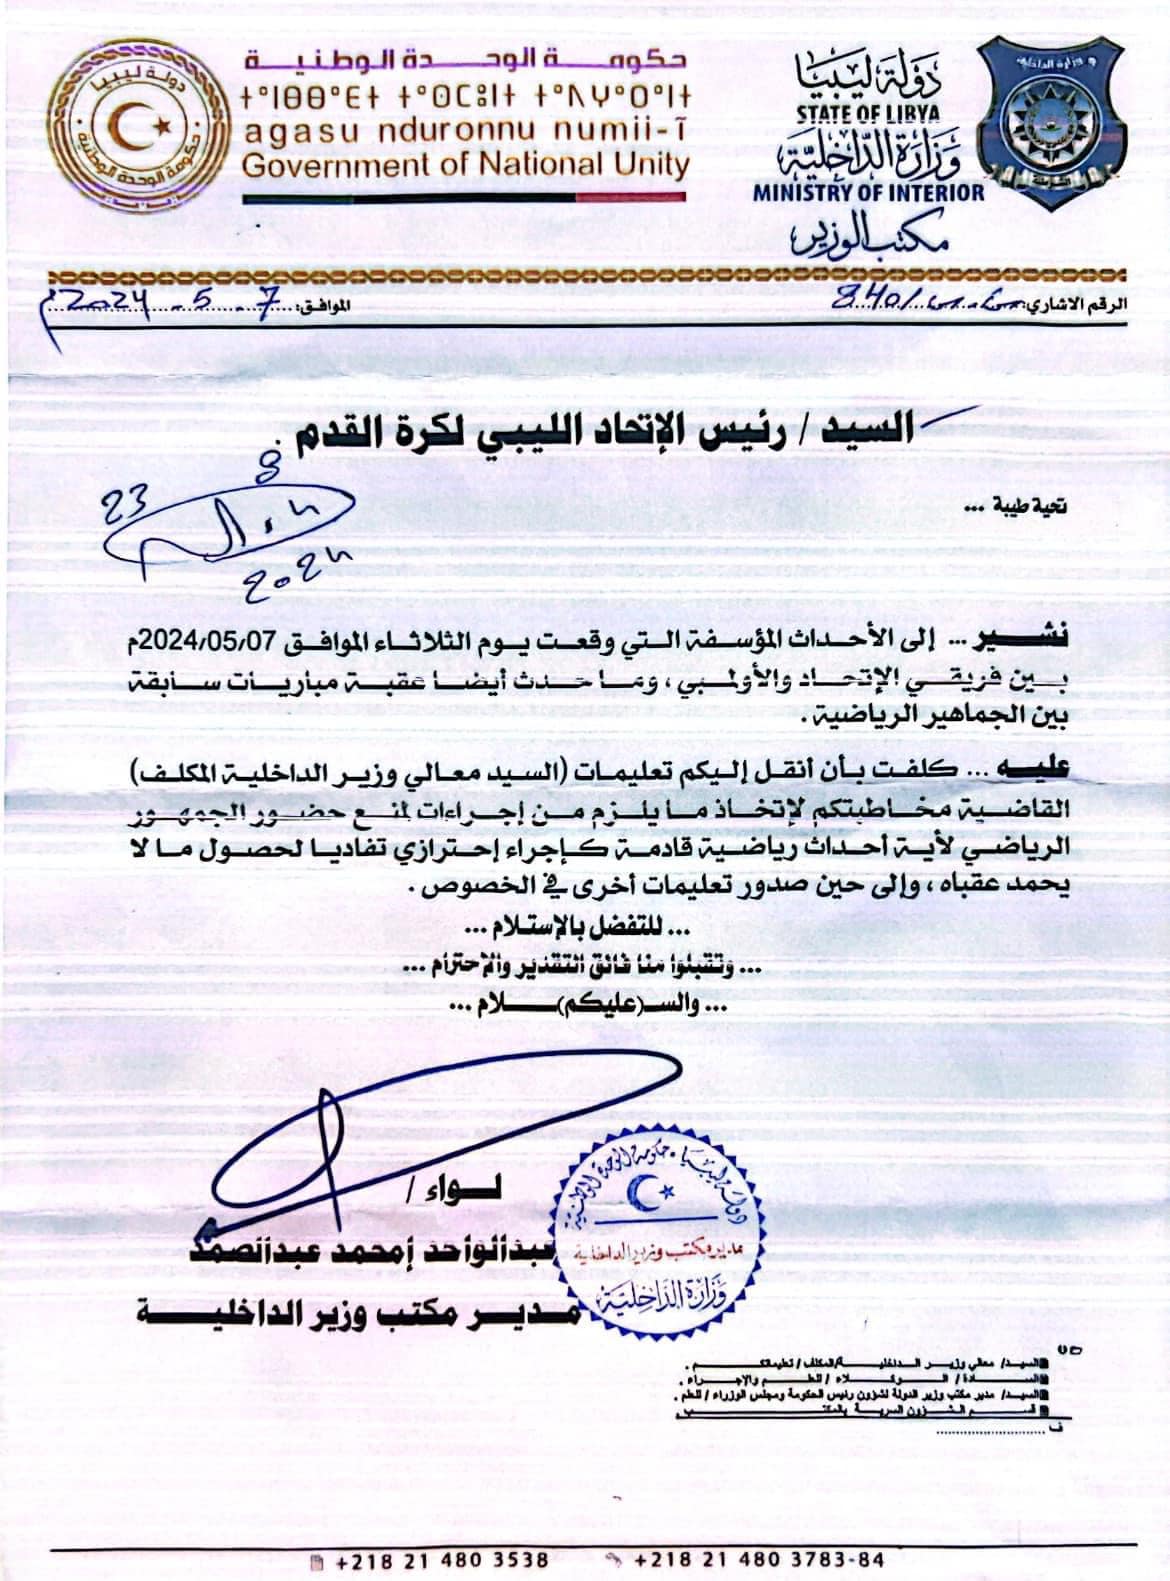 خطاب وزارة الداخلية الليبية